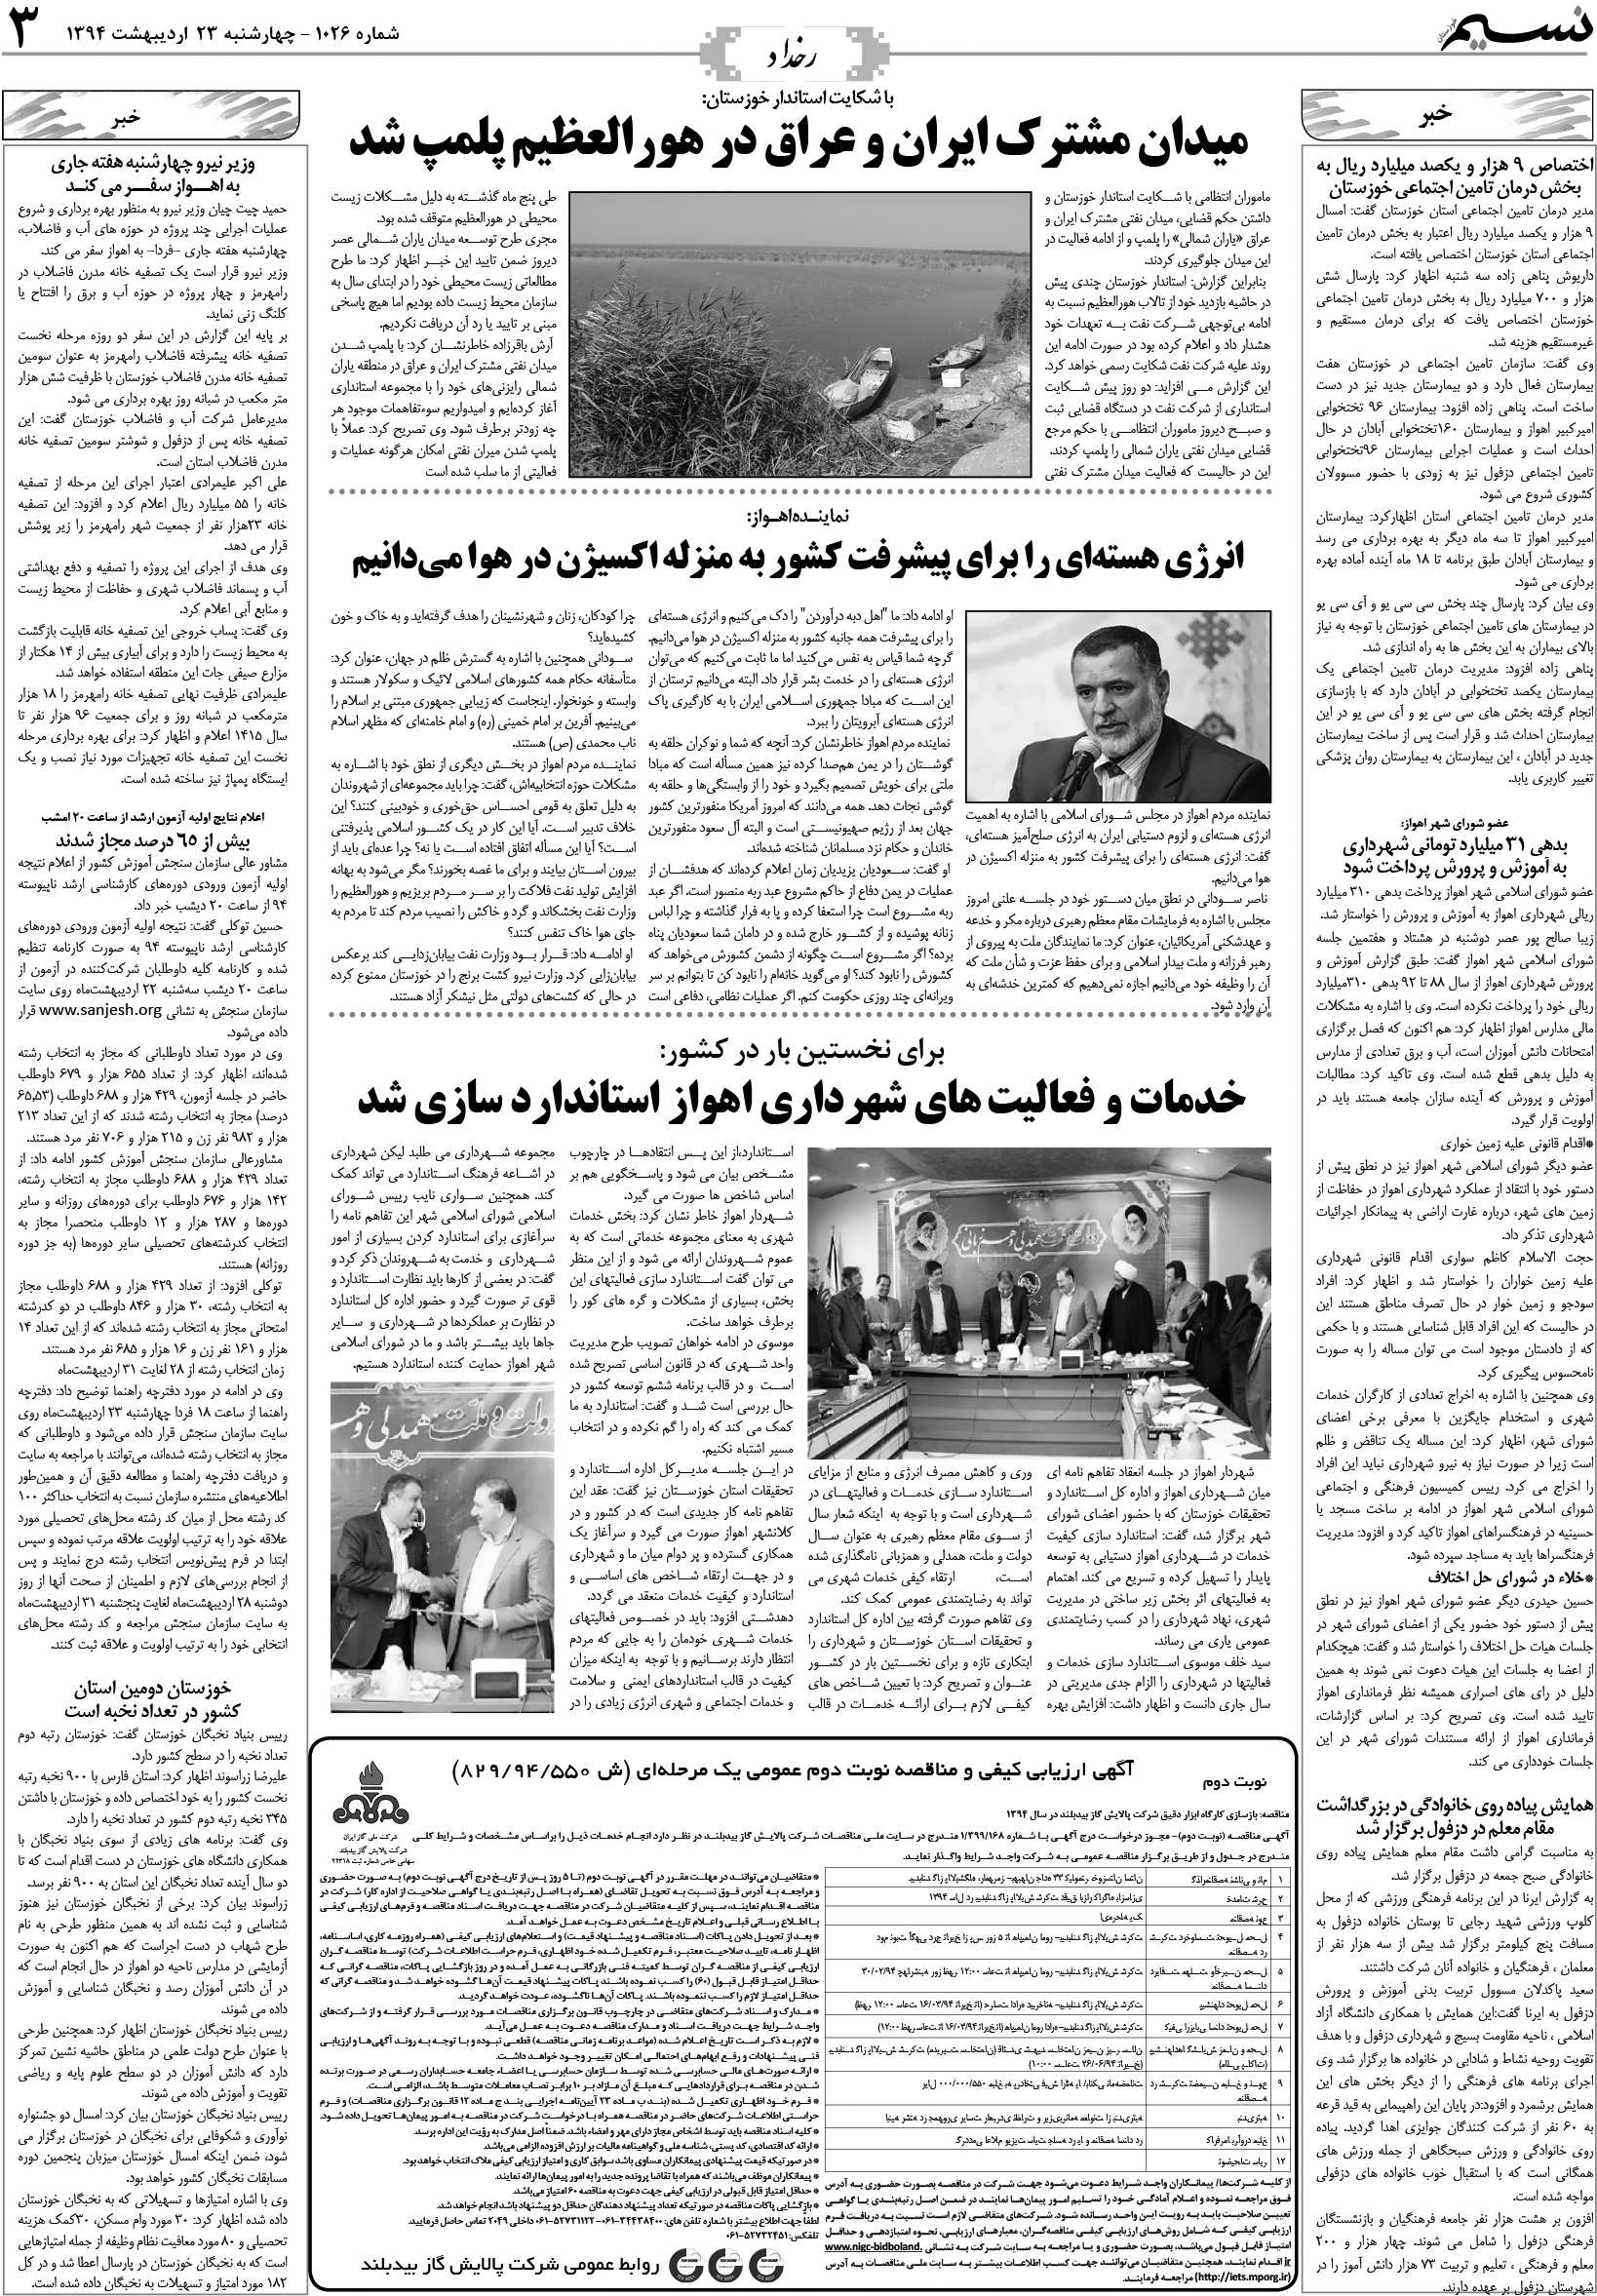 صفحه رخداد روزنامه نسیم شماره 1026